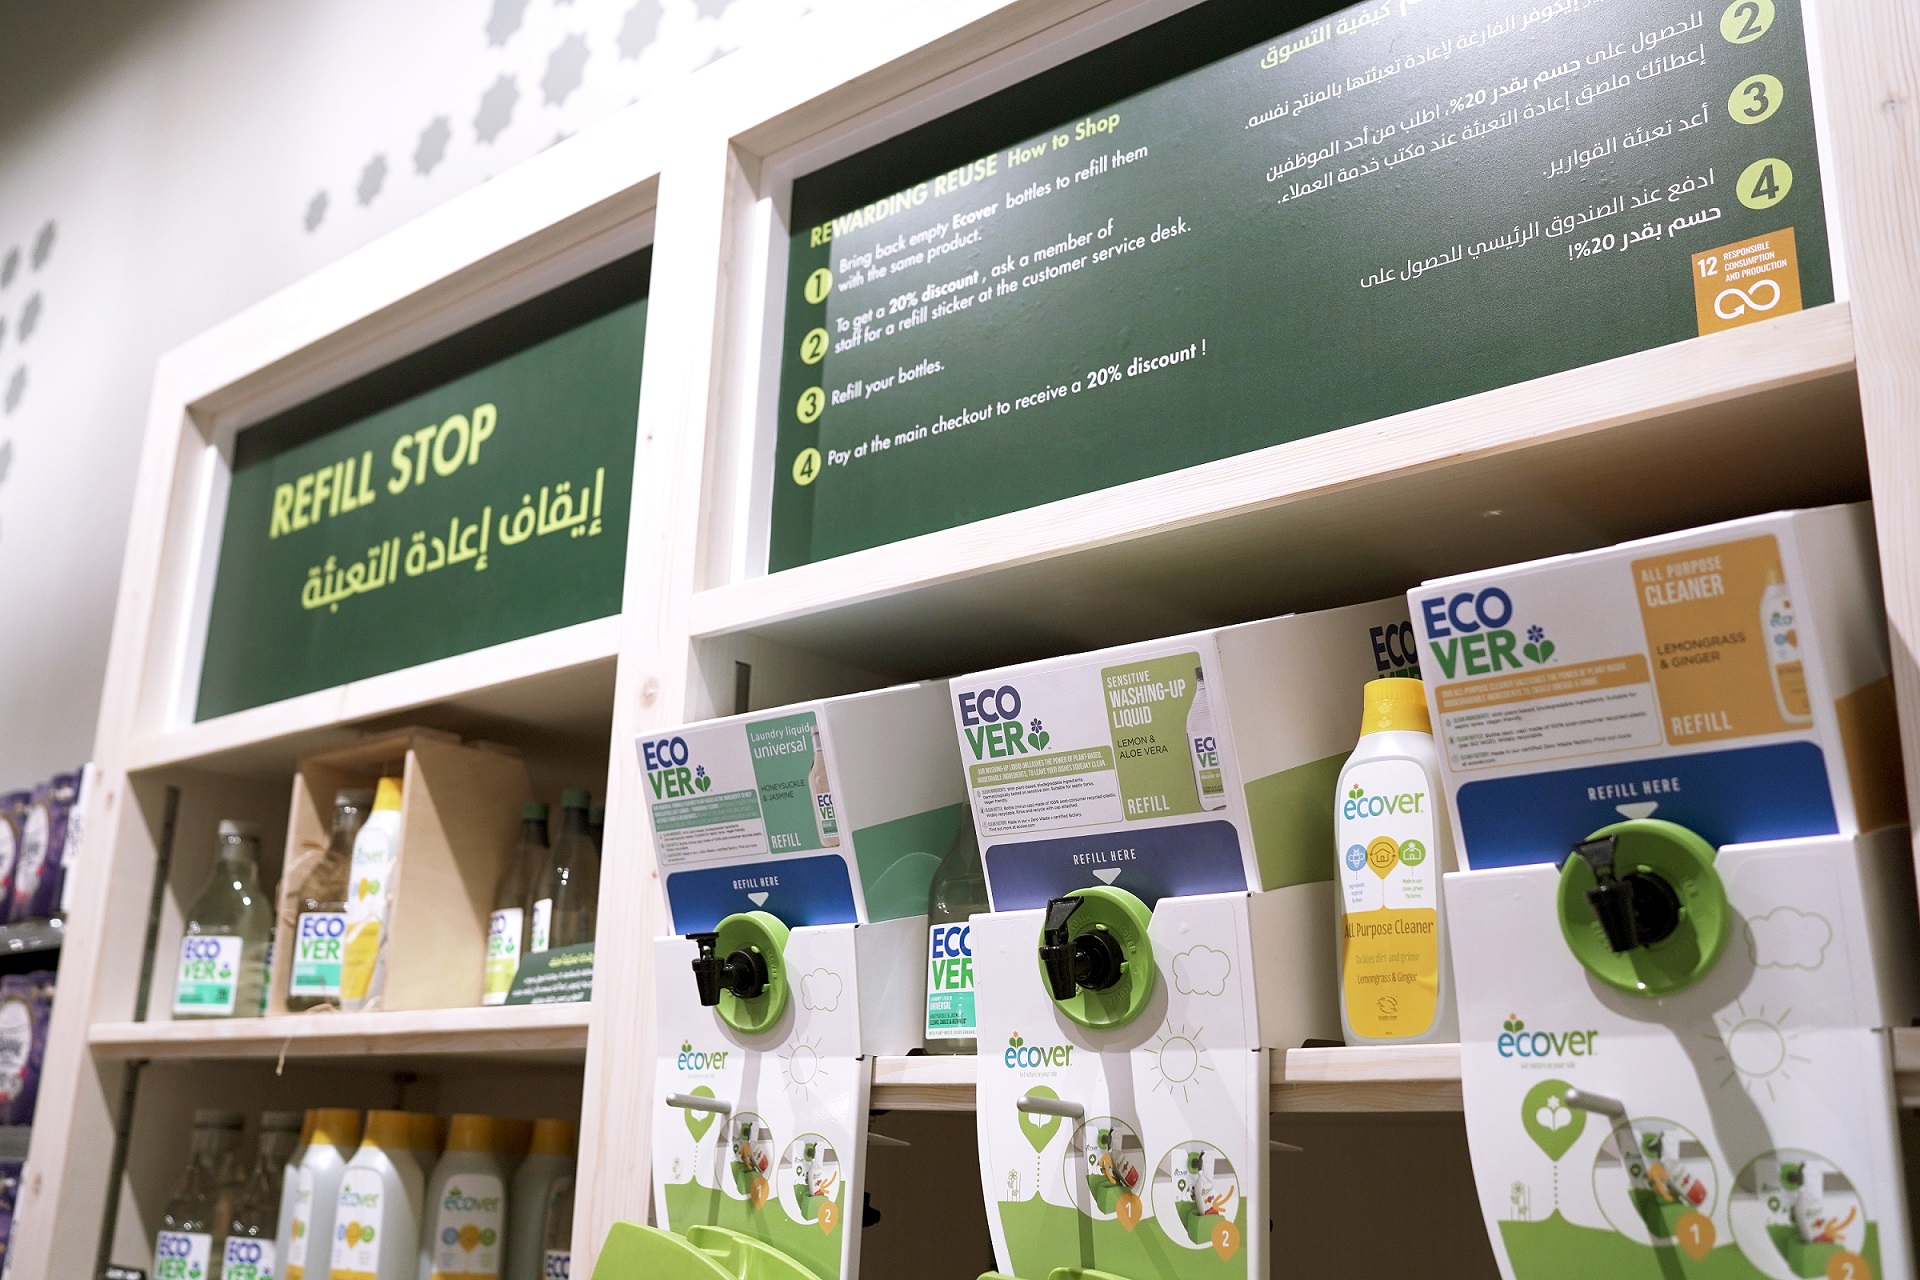 سبينس تفتتح متجر متكامل بمفهوم الاستدامة في دبي